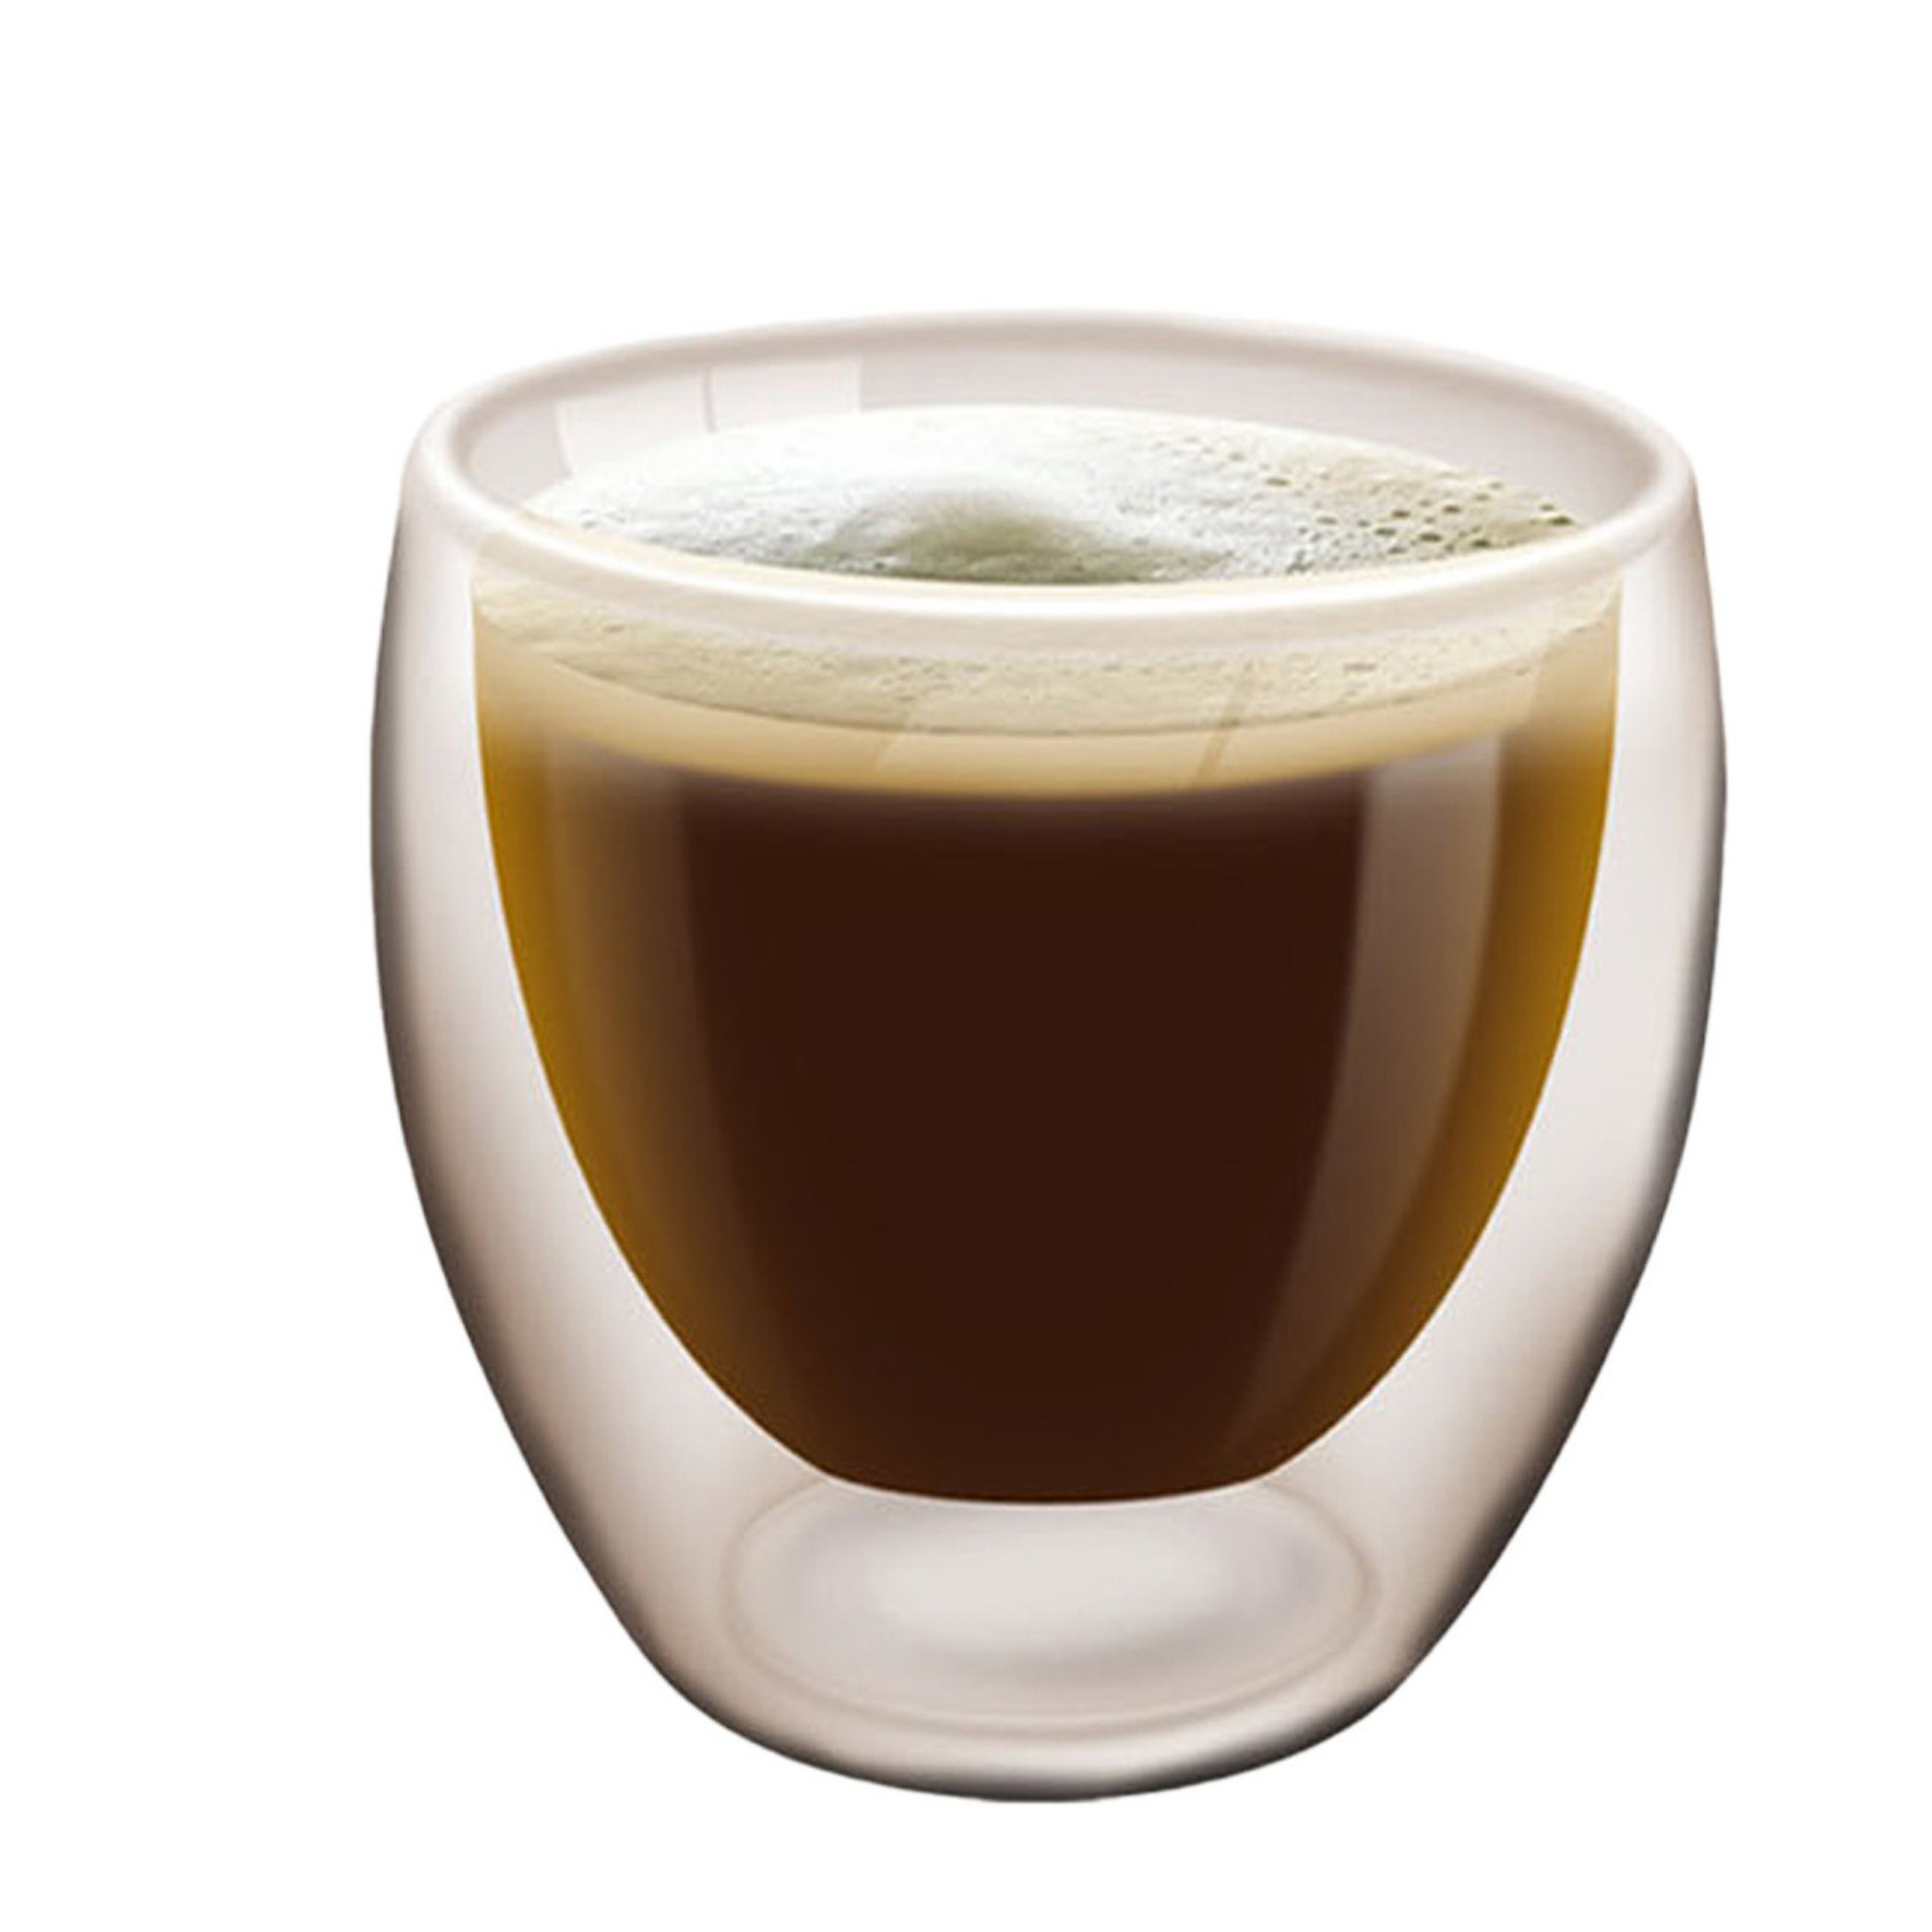 Haushaltshelden koffieglas/theeglas dubbelwandig - 1x - lungo glas - 200 ml -